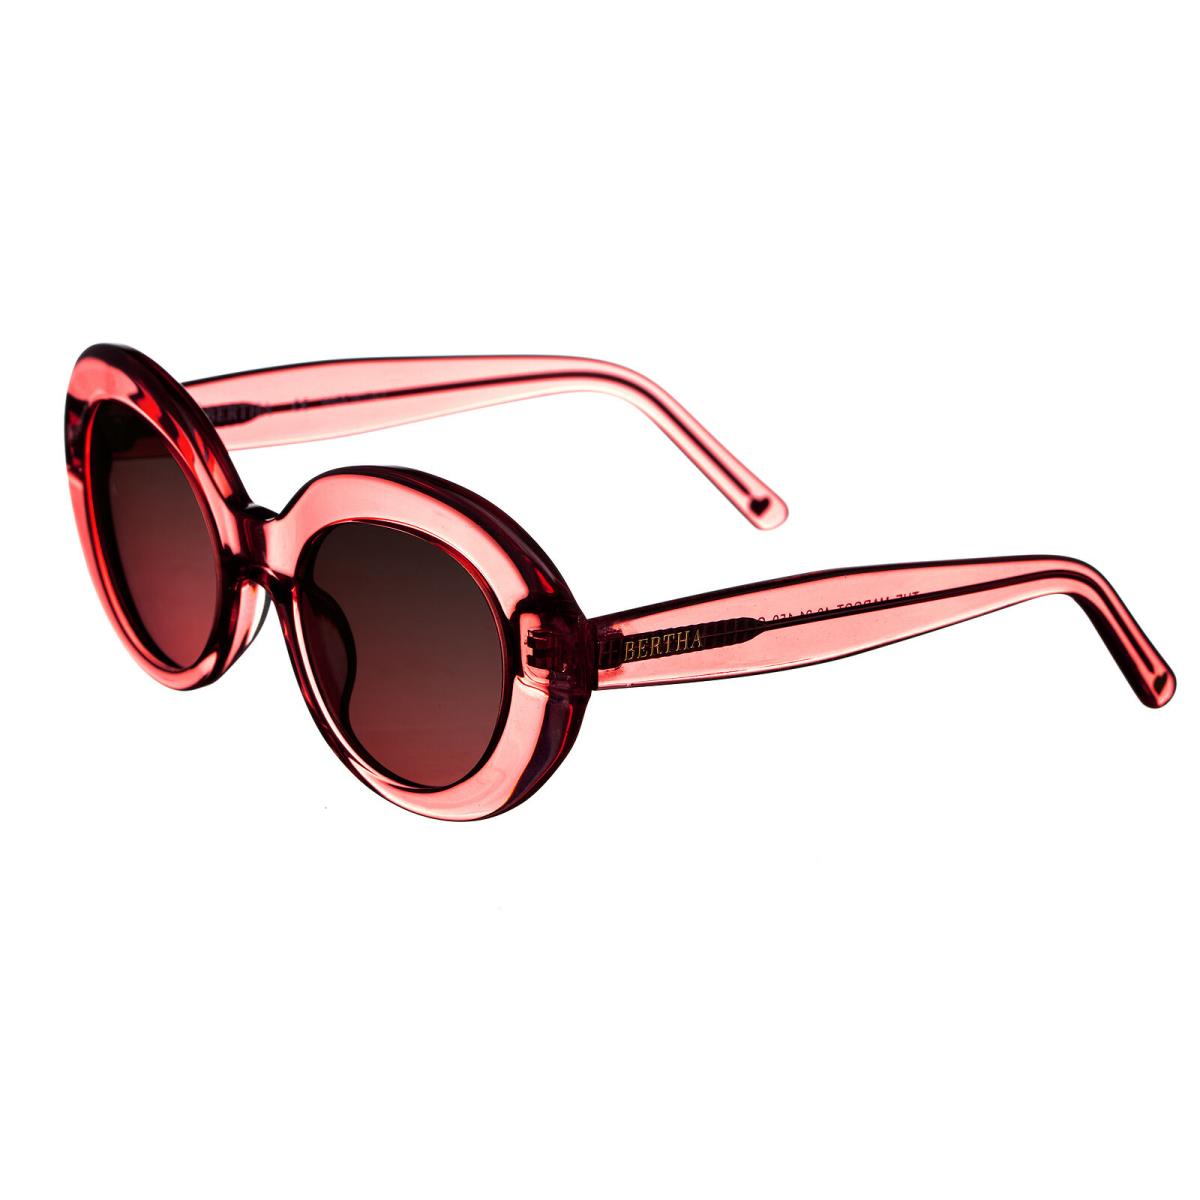 Bertha Margot Handmade in Italy Sunglasses - Red